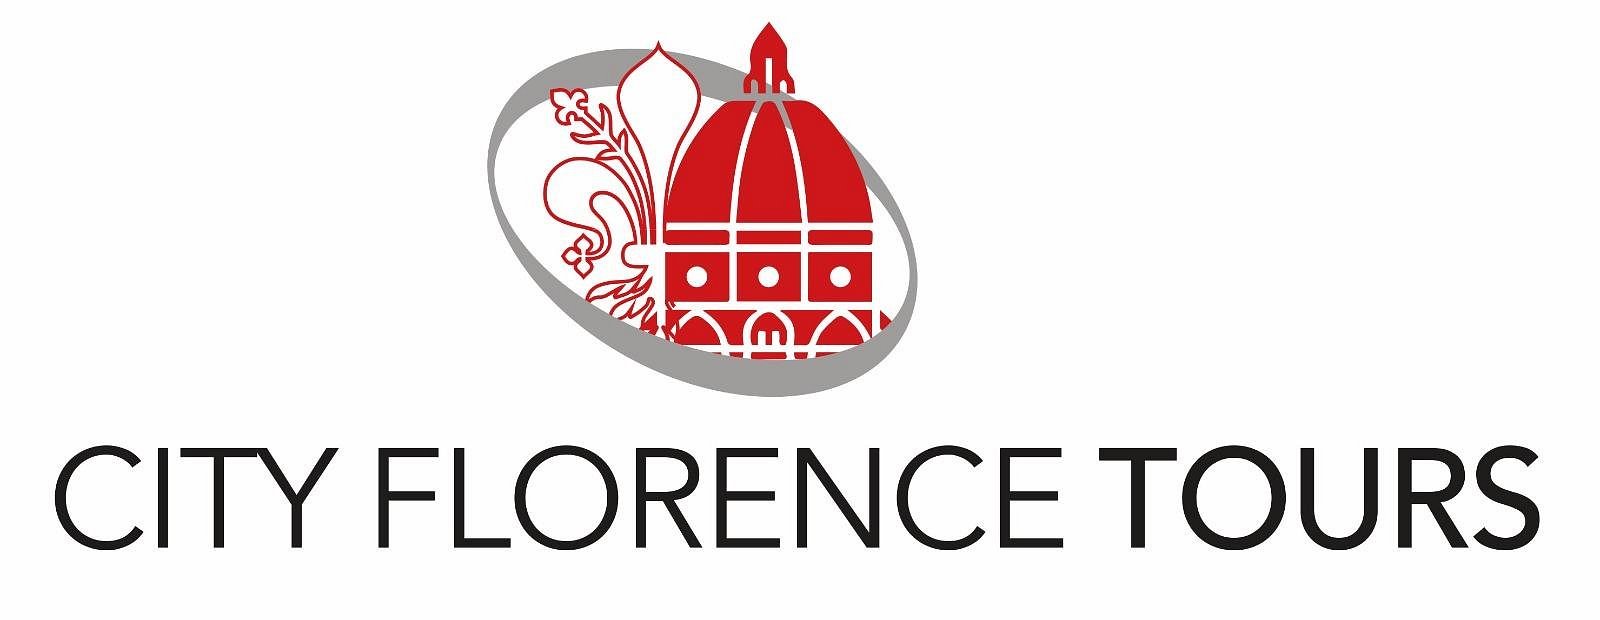 city florence tours s.r.l